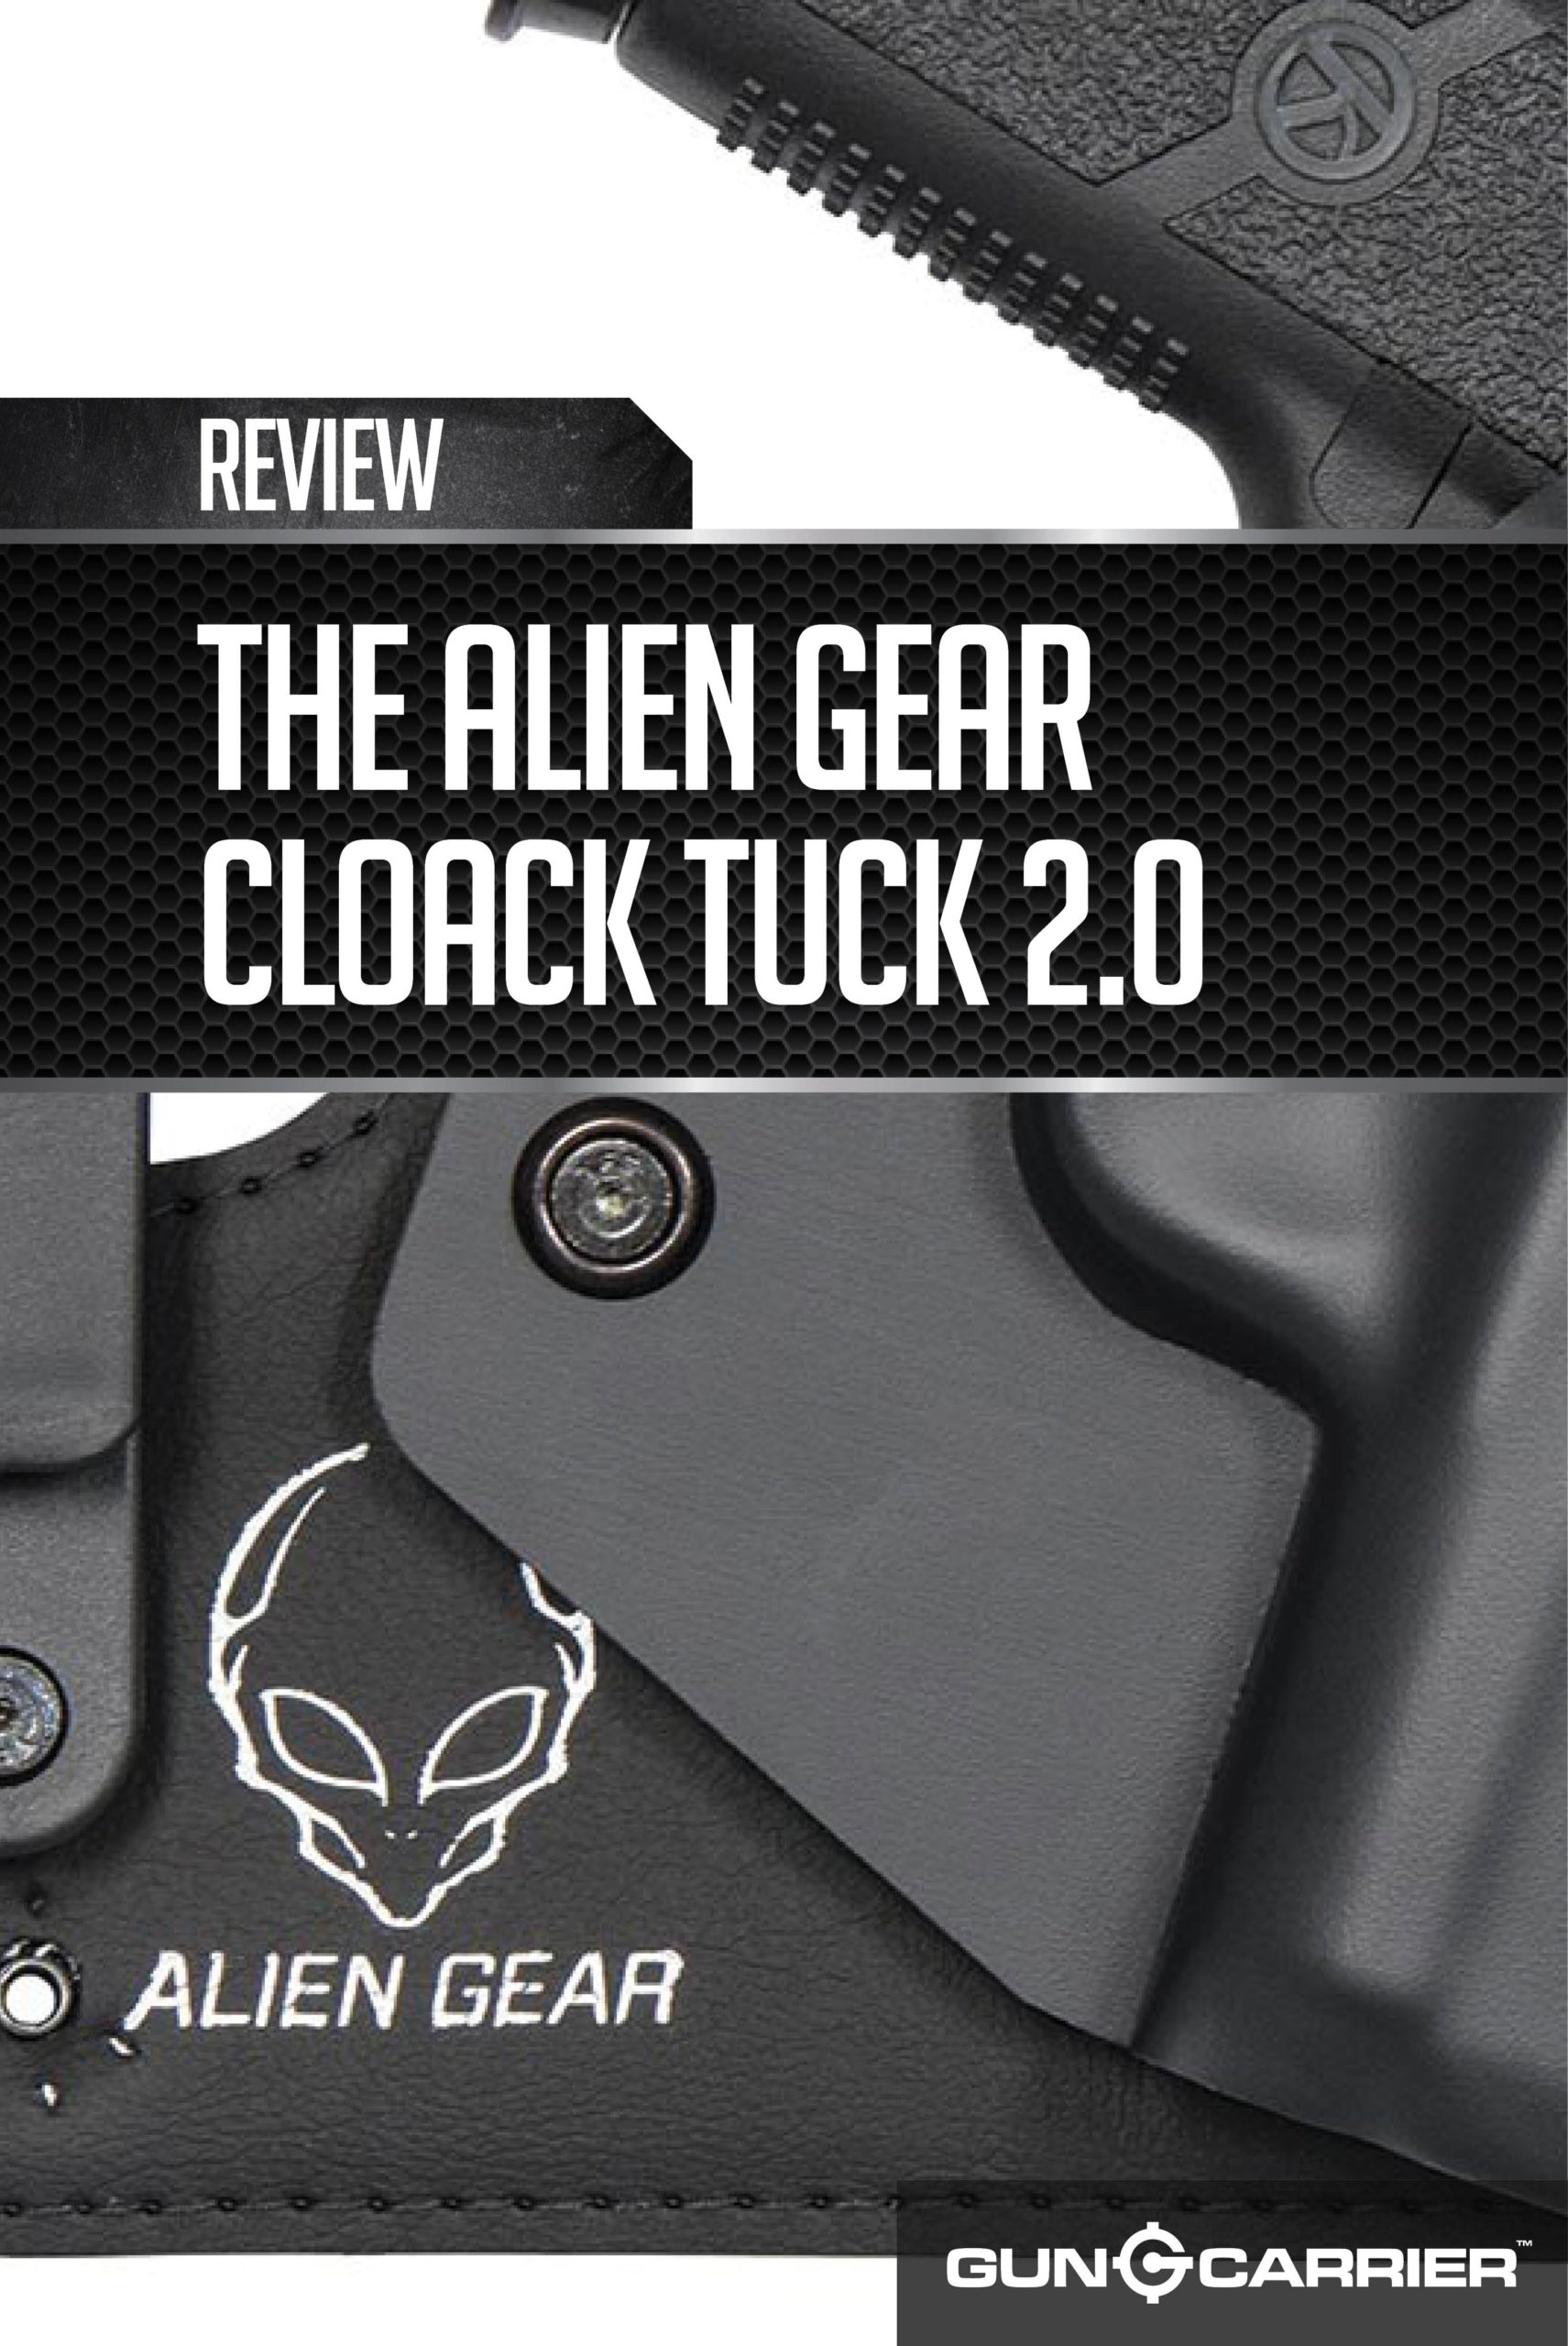 Alien Gear Cloak Tuck 2.0 by Gun Carrier at https://guncarrier.com/alien-gear-cloak-tuck-2-0/ ‎